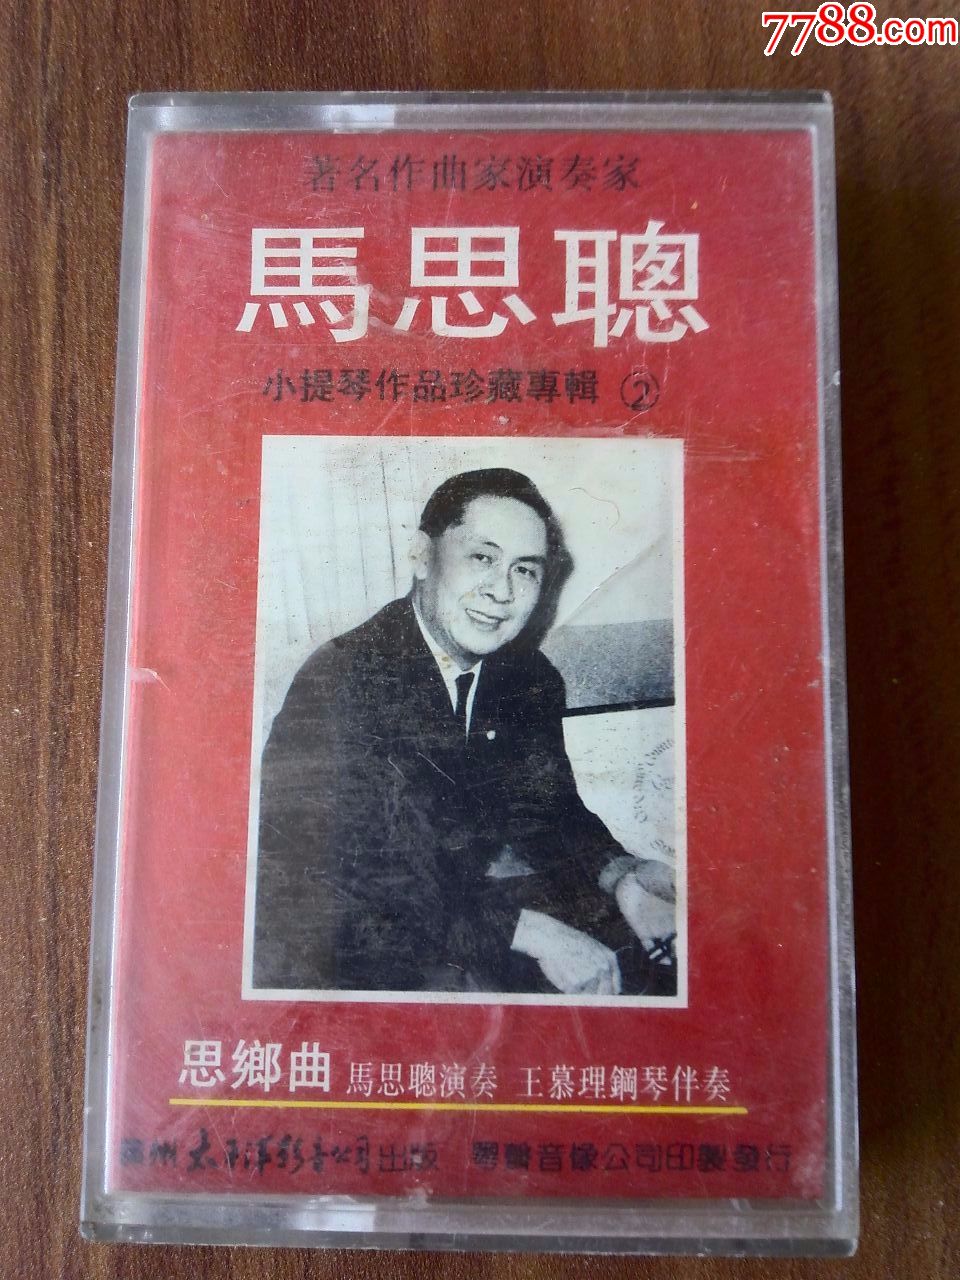 马思聪小提琴演奏专辑(2《思乡曲》广州太平洋影音出品